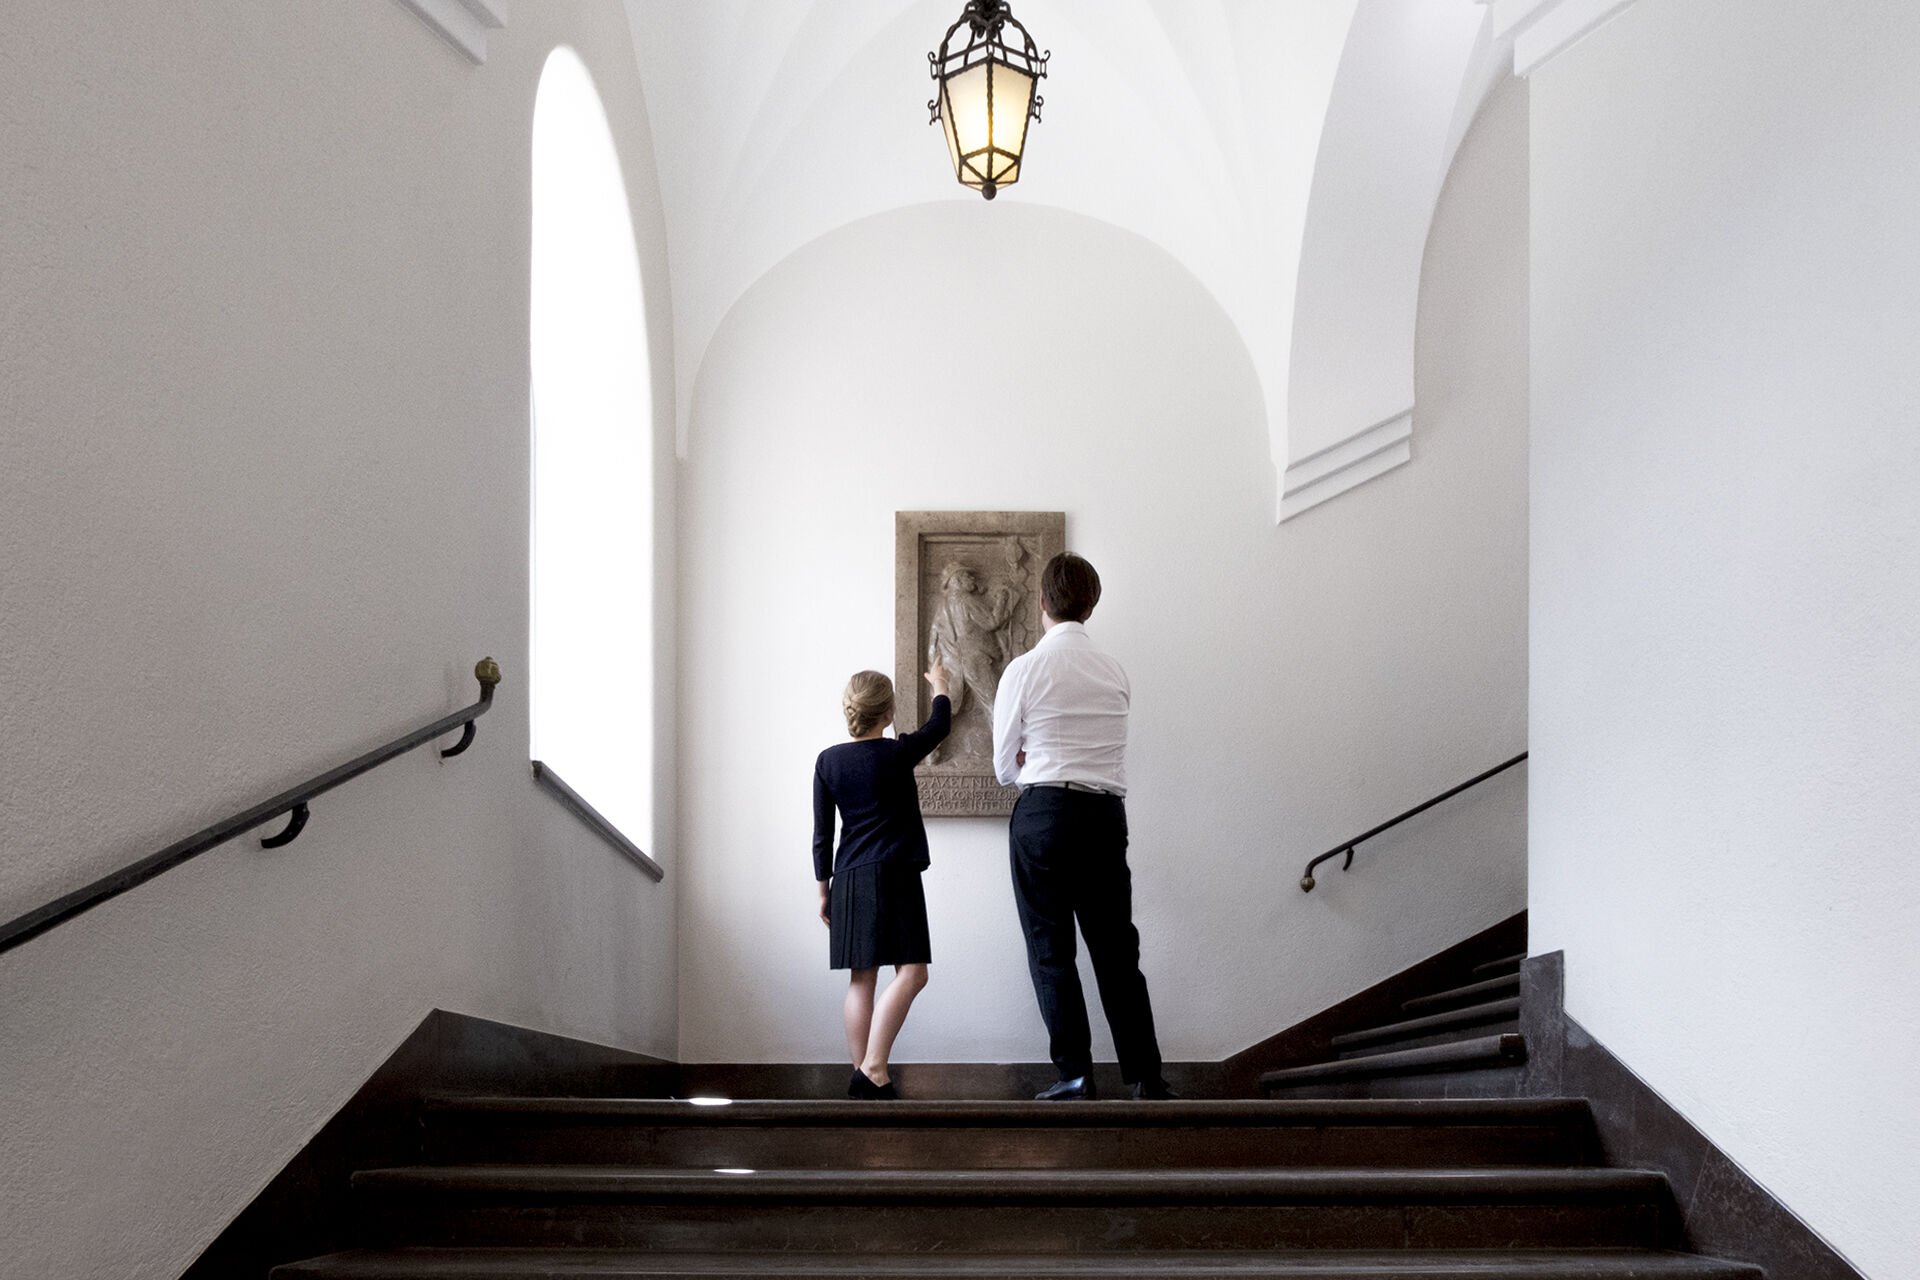 Pampig stentrappa inne i Röhsska museet, på trappavsatsen står en man och en kvinna och tittar på ett donerat konstverk.